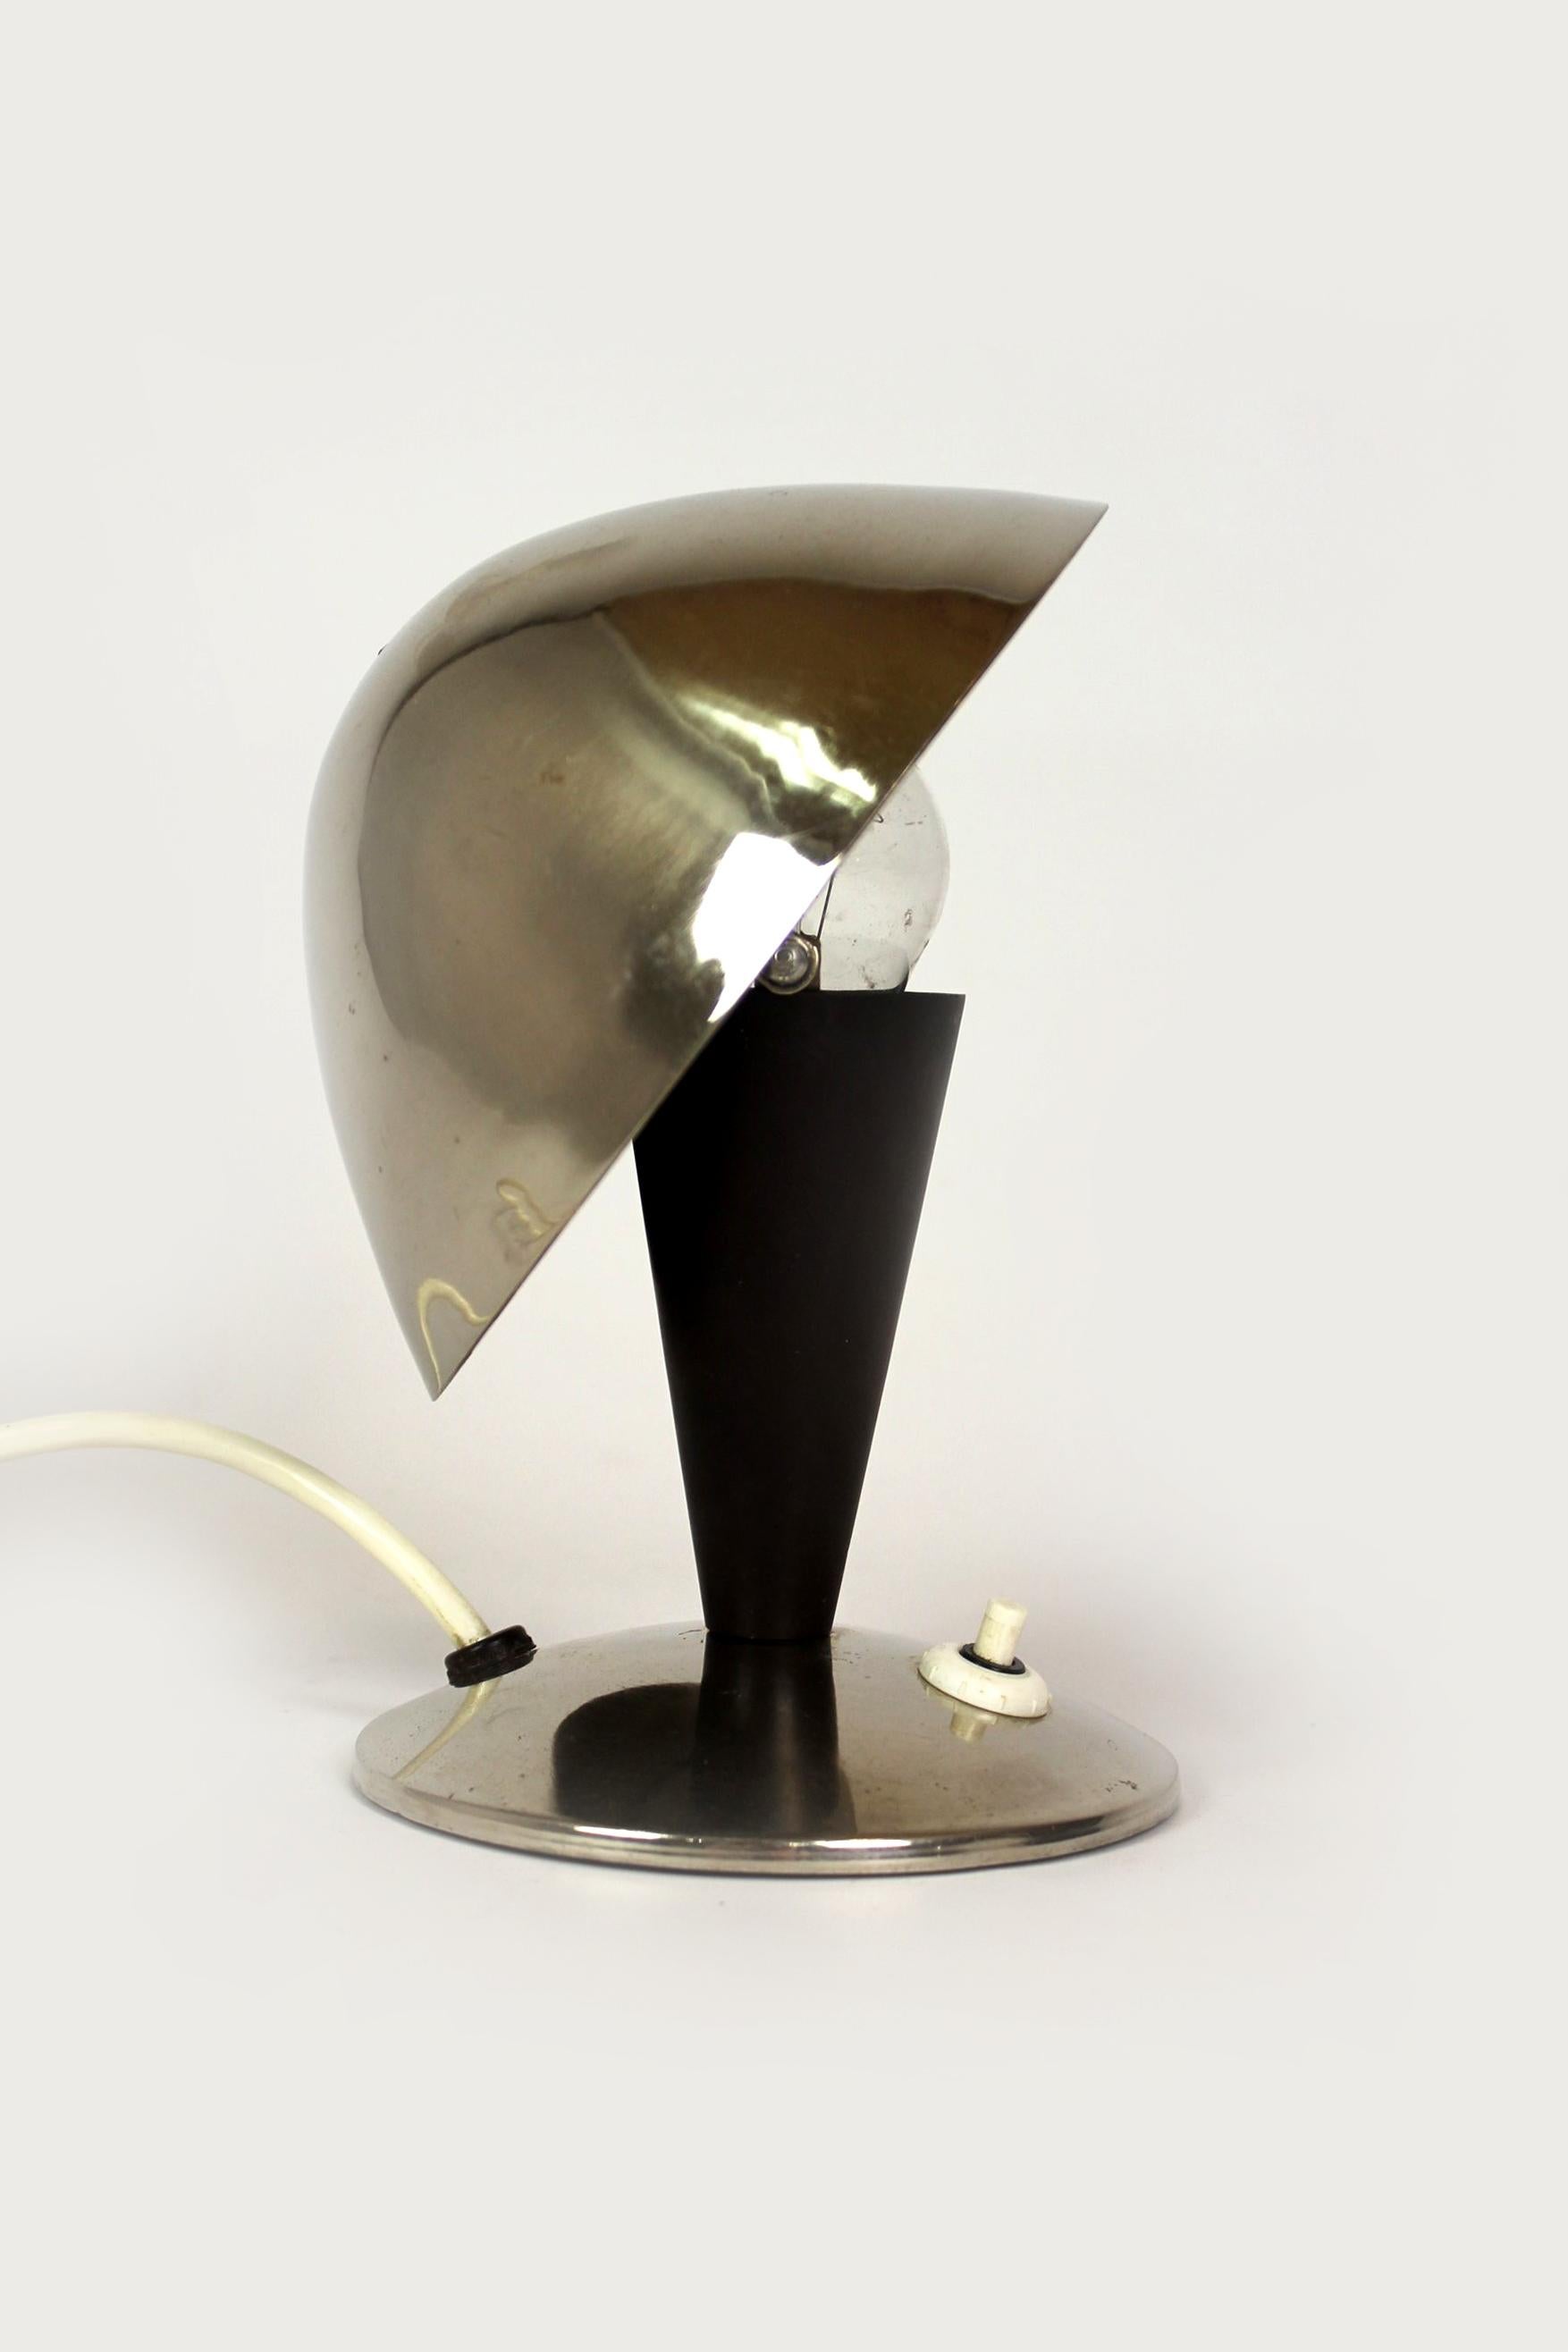 
Cette lampe de table de style Bauhaus a été produite par ESC dans les années 1940 en Tchécoslovaquie. La lampe est en état de marche, conservée en bon état d'origine avec une patine visible.